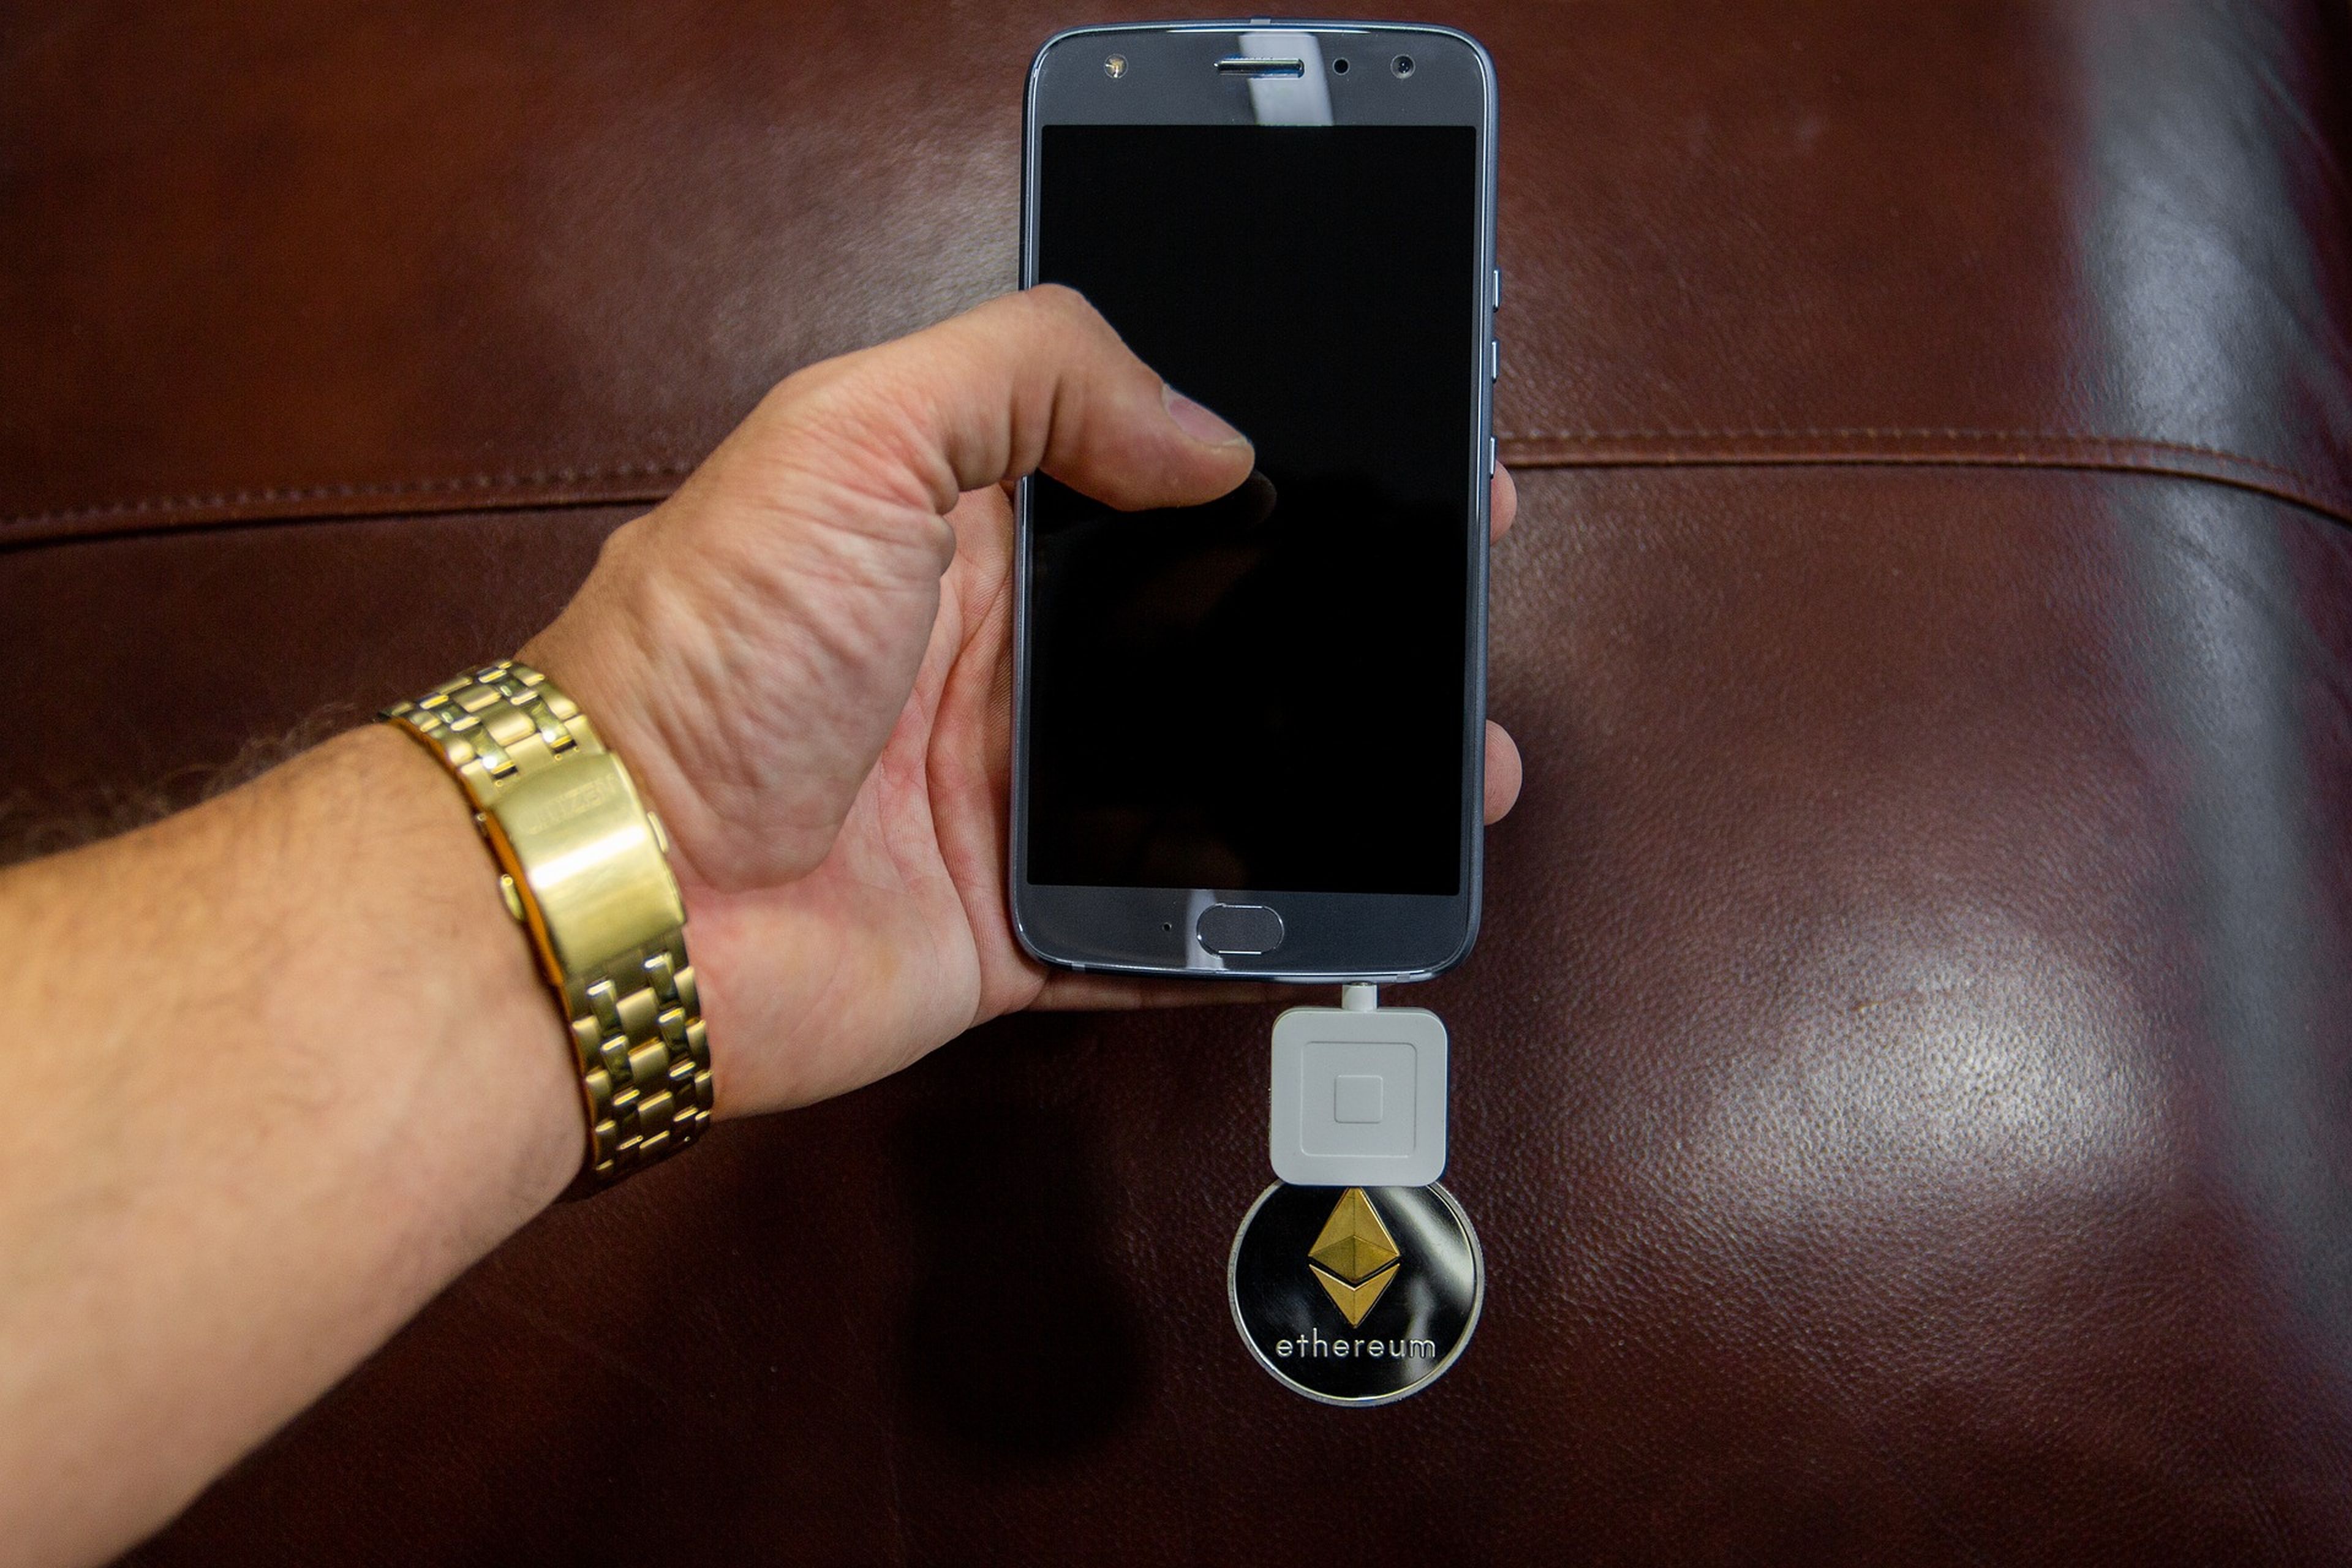 Un móvil con una wallet de critpomonedas conectada.